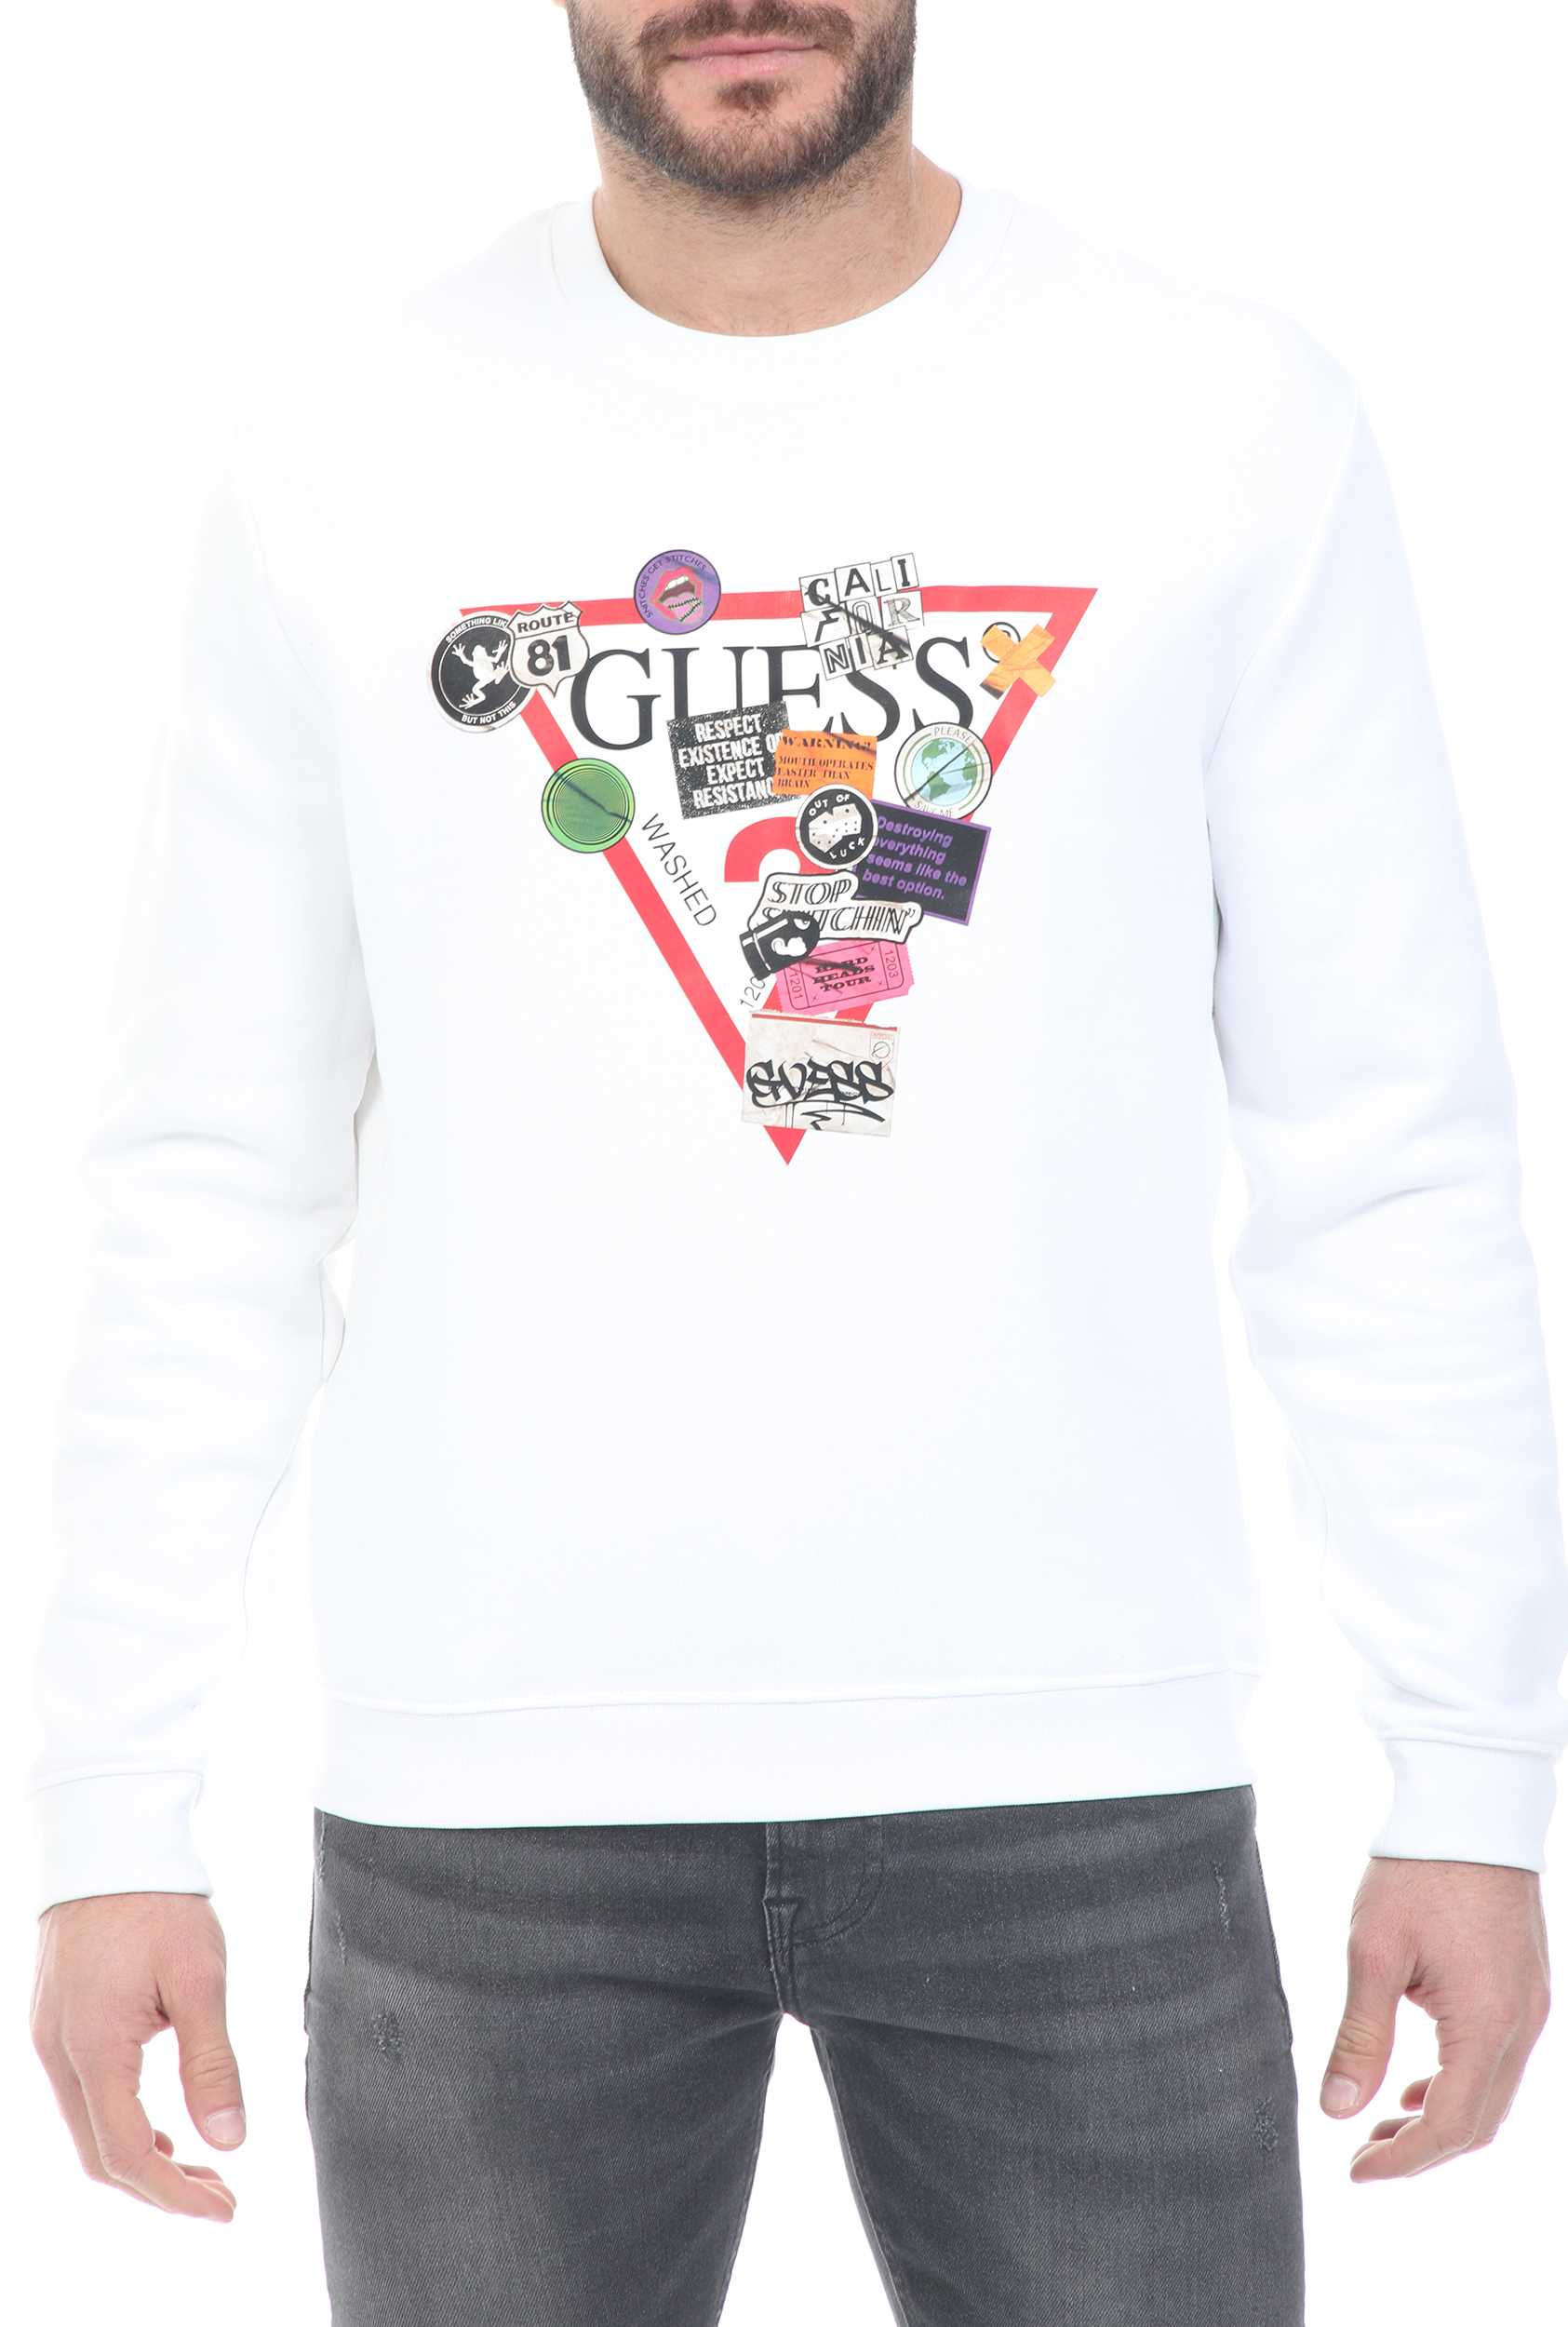 Ανδρικά/Ρούχα/Φούτερ/Μπλούζες GUESS - Ανδρική φούτερ μπλούζα GUESS EDRIC CN FLEECE - ORGANIC CO λευκή